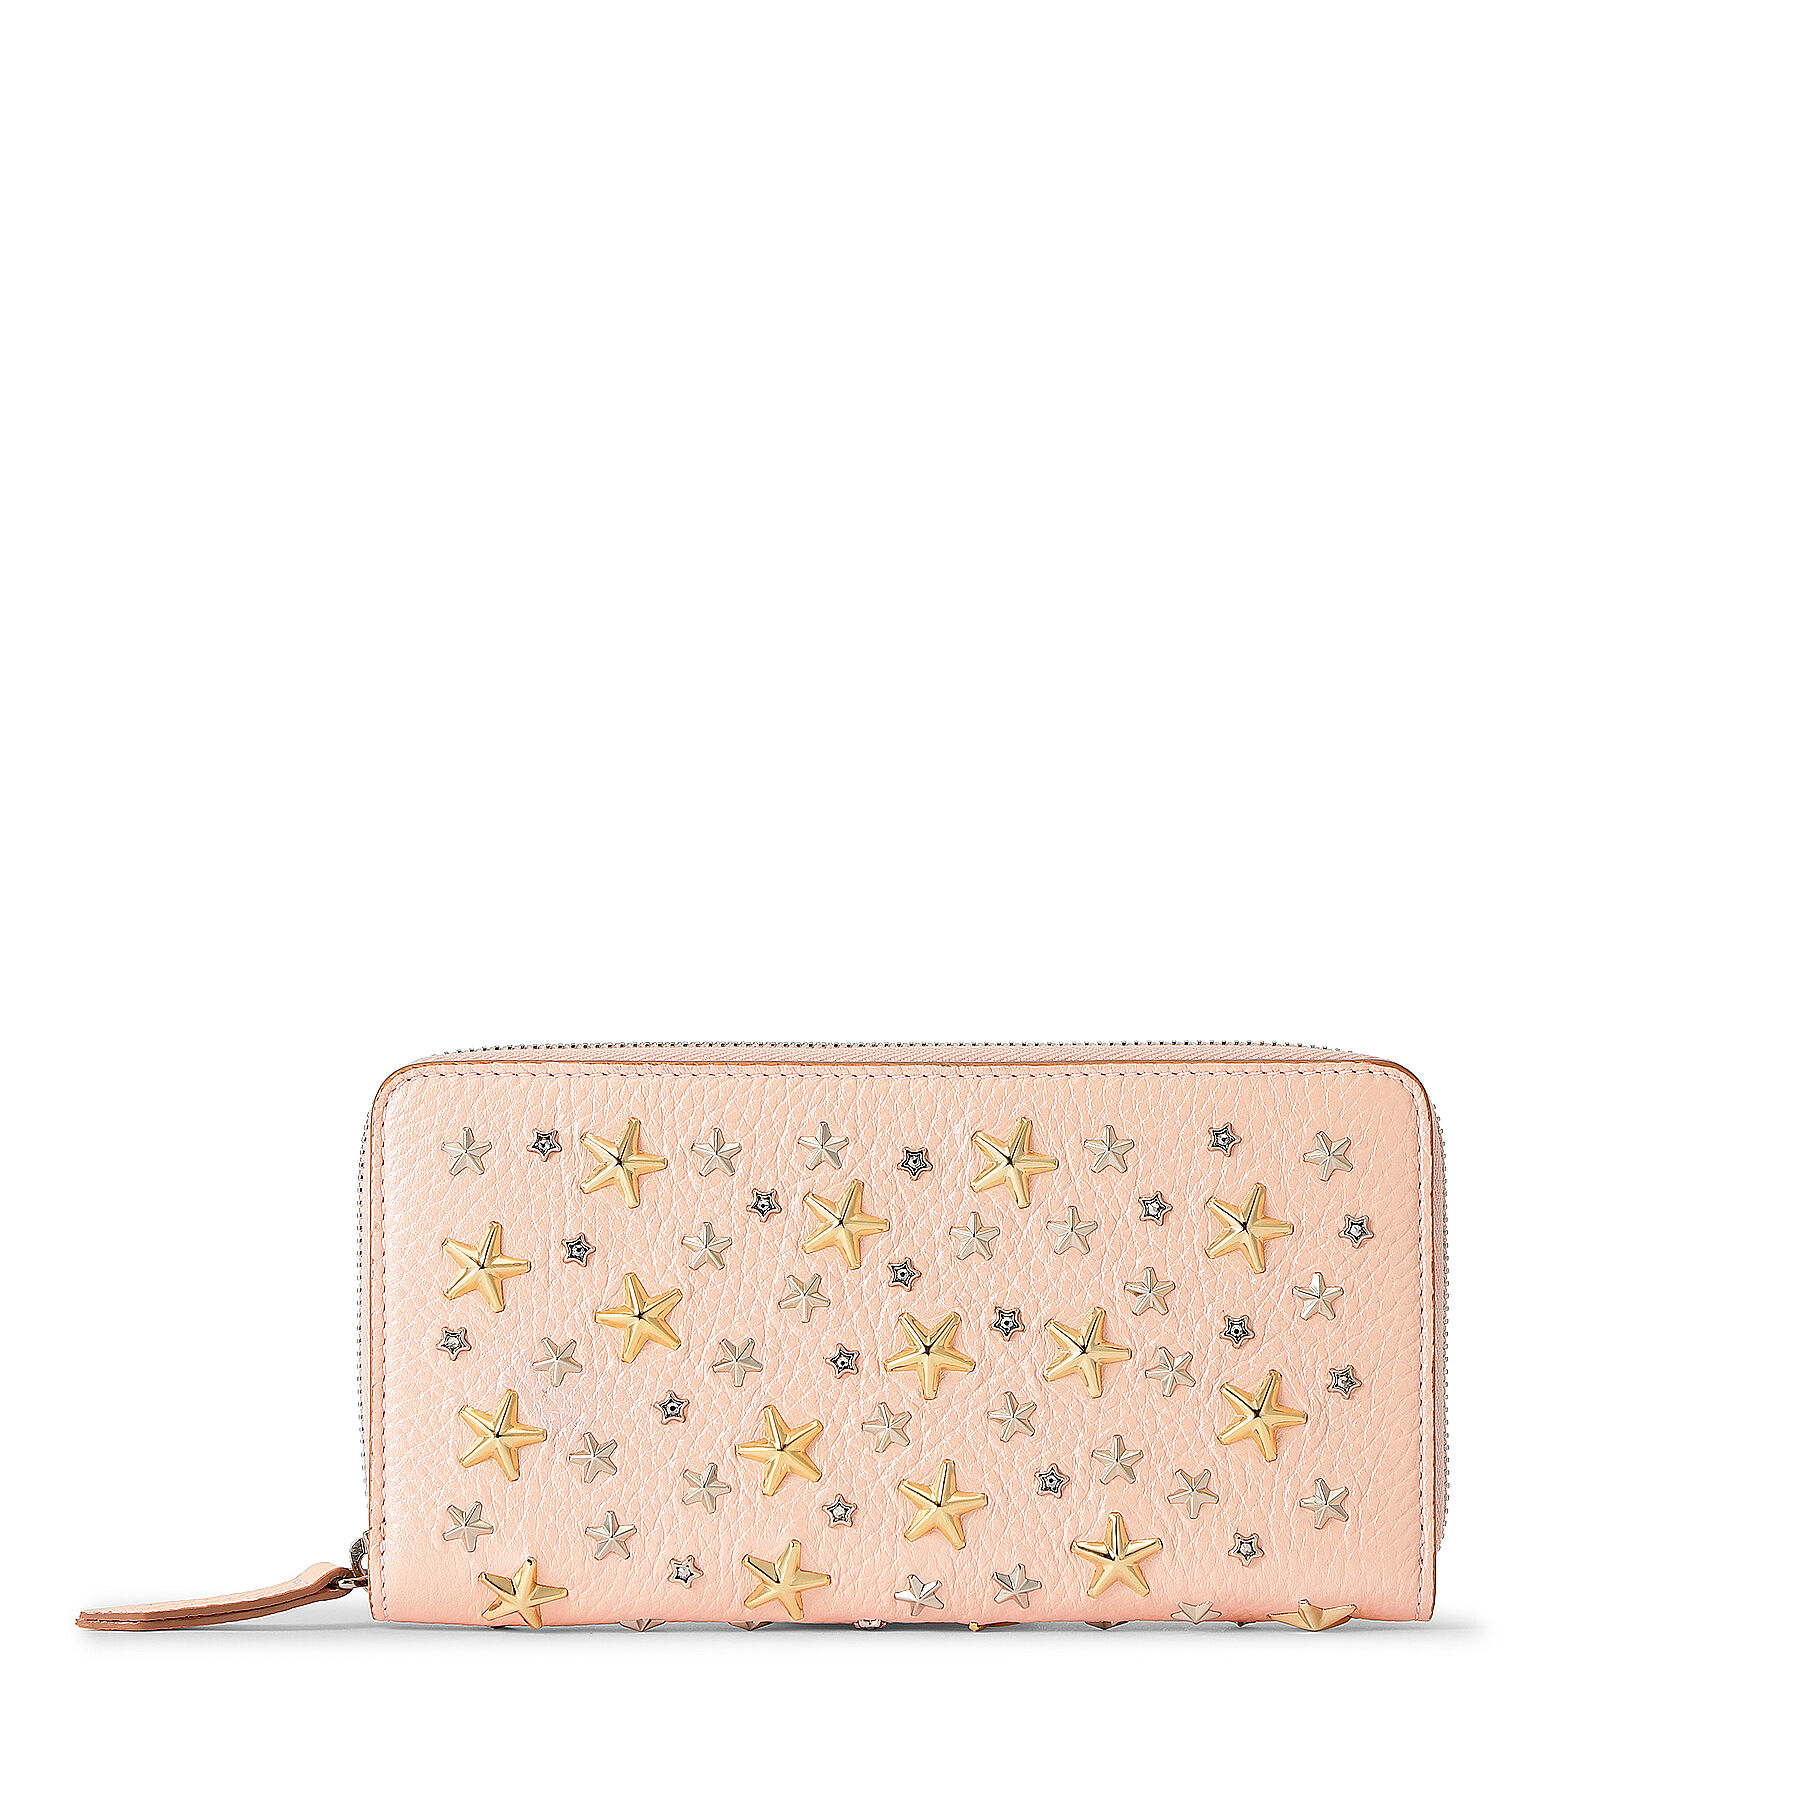 ジミーチュウの可愛いピンク財布はPIPPAです